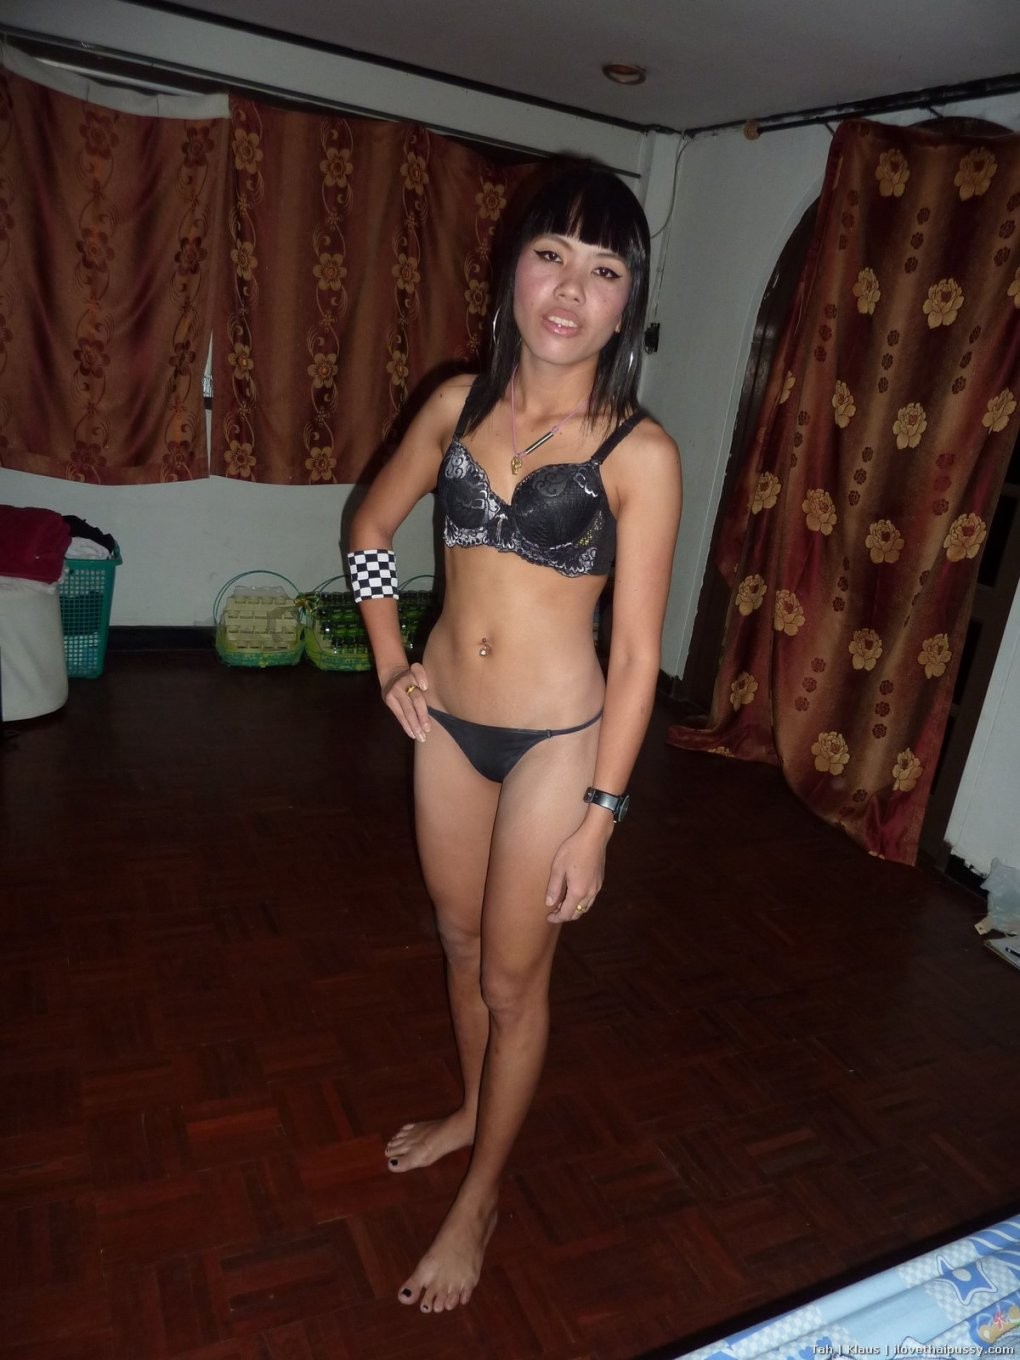 Geile thailändische Schlampe bareback gefickt von einem verrückten Sextouristen dreckige asiatische Hure
 #69863728